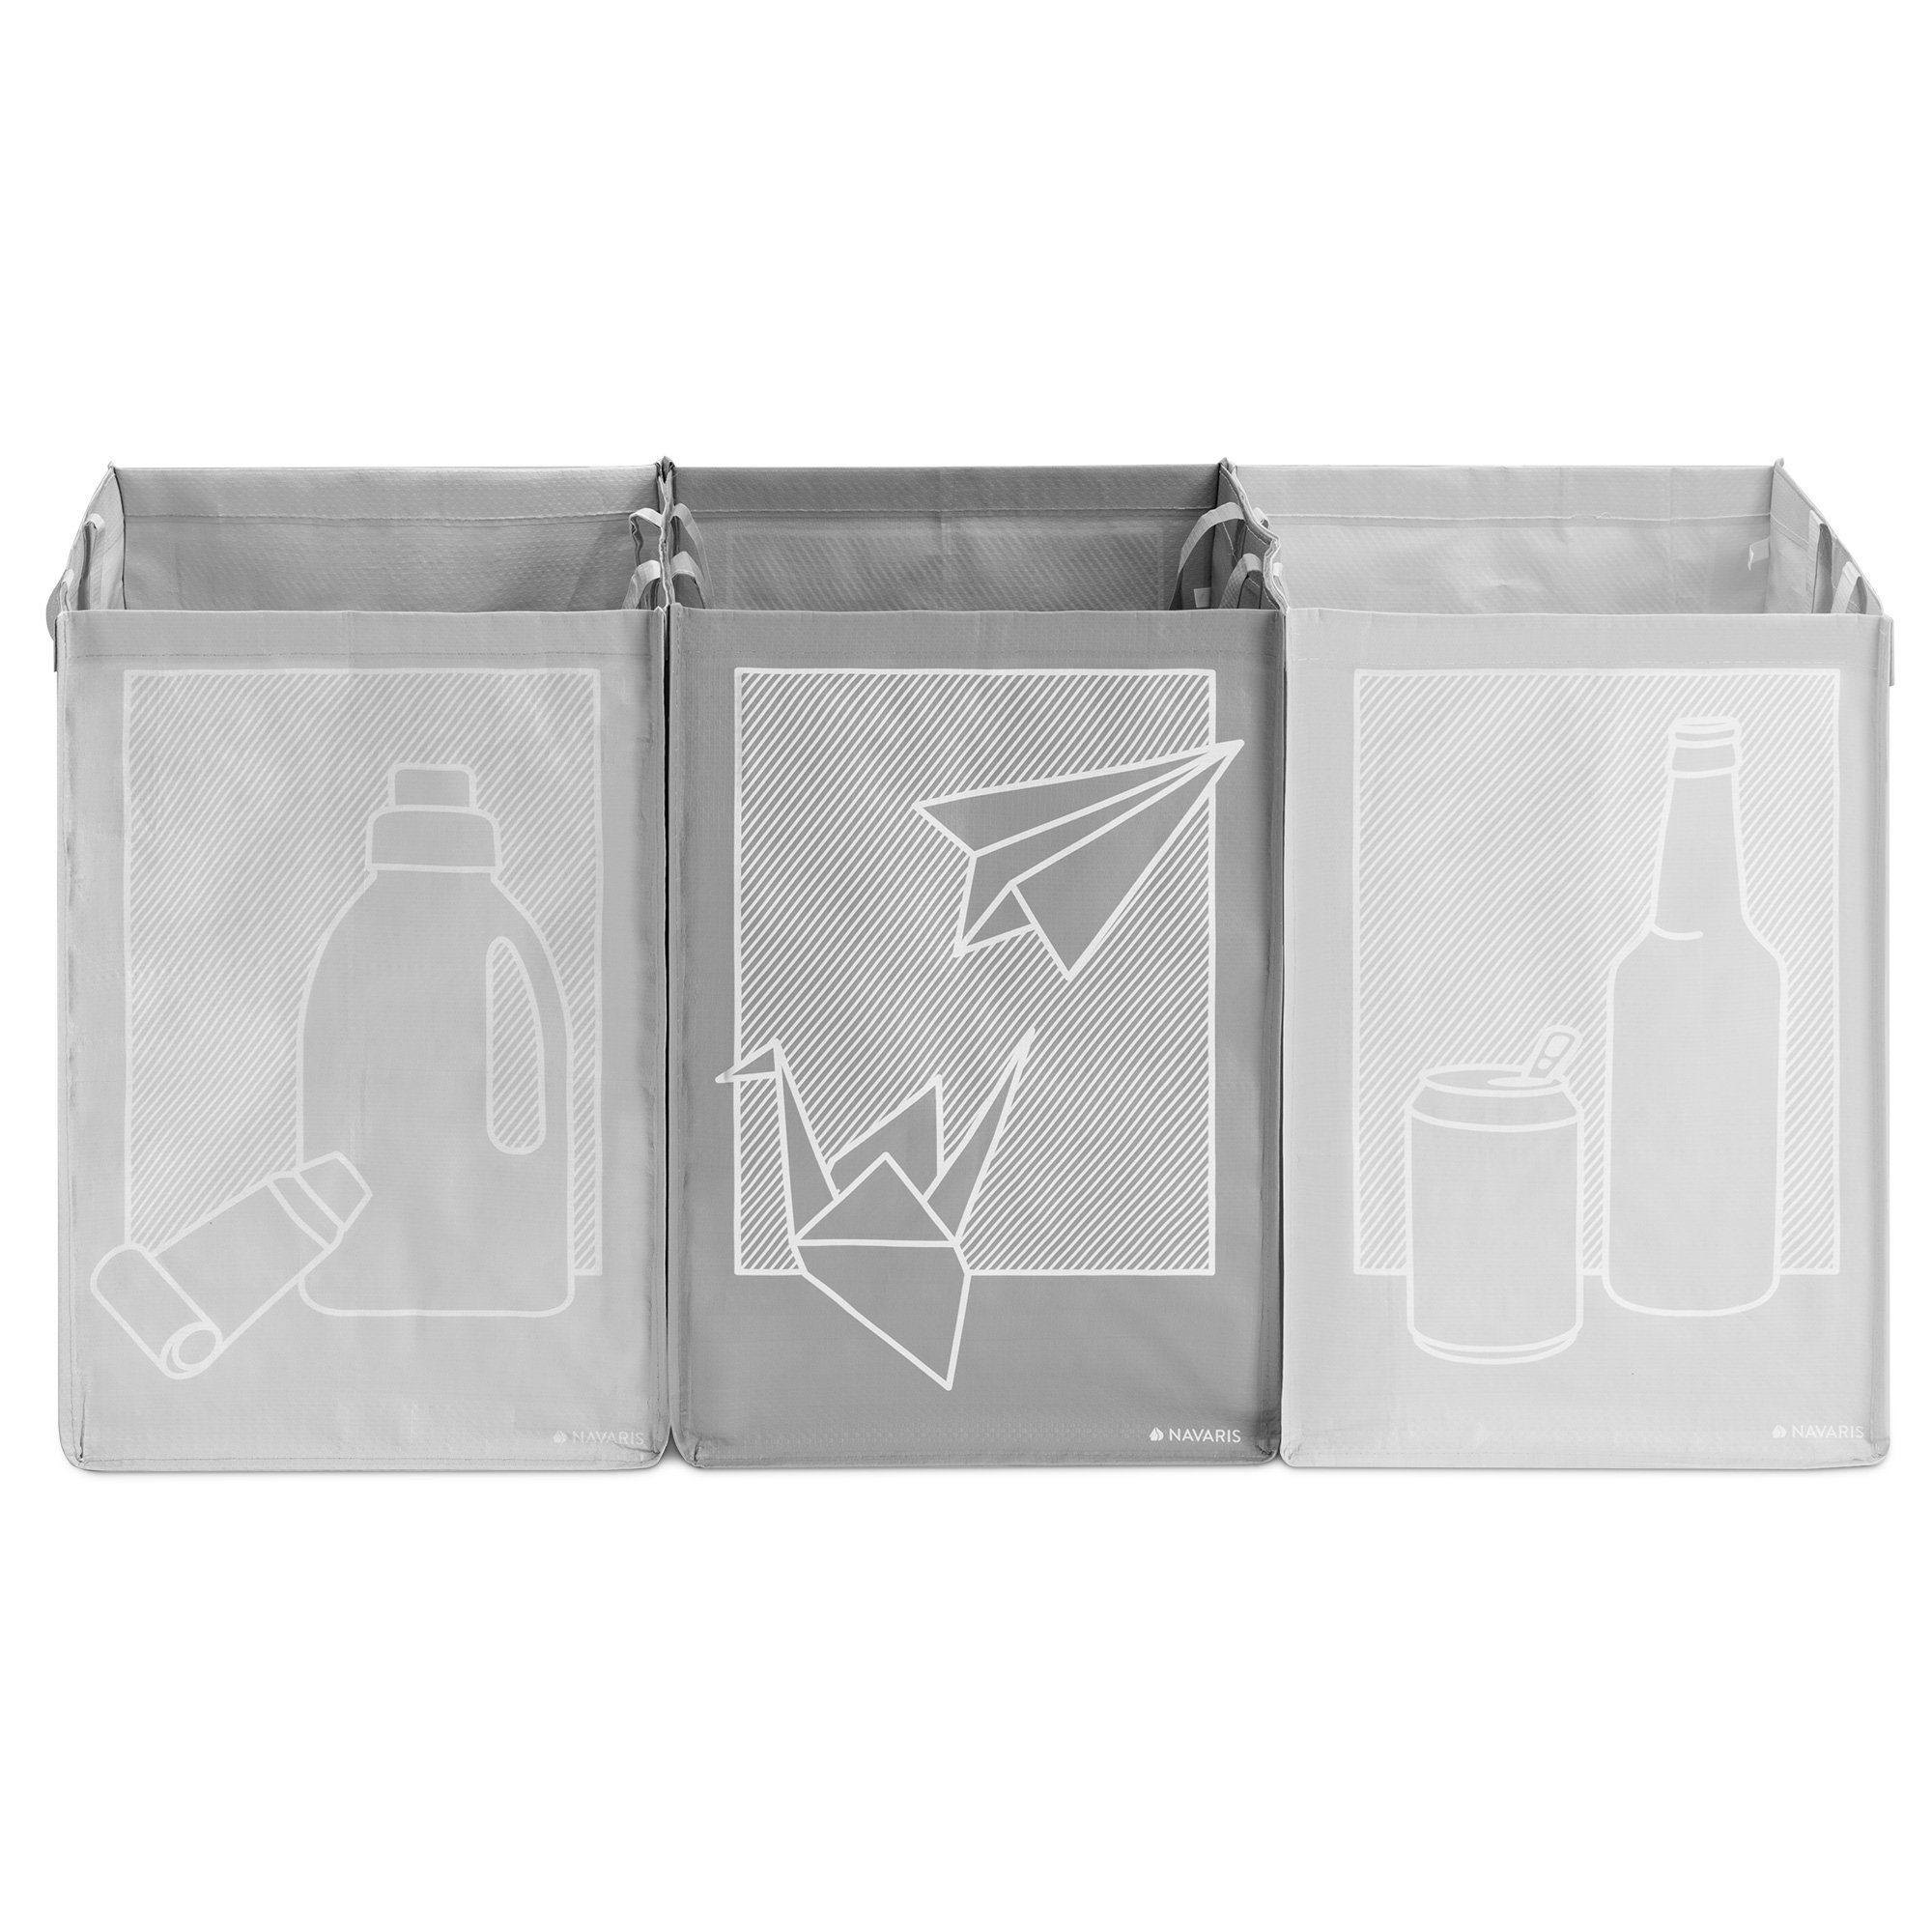 Taschen Plastik Navaris und - Glas, 3er Set Müllsortierer Papier Recycling für Mülltrennsystem